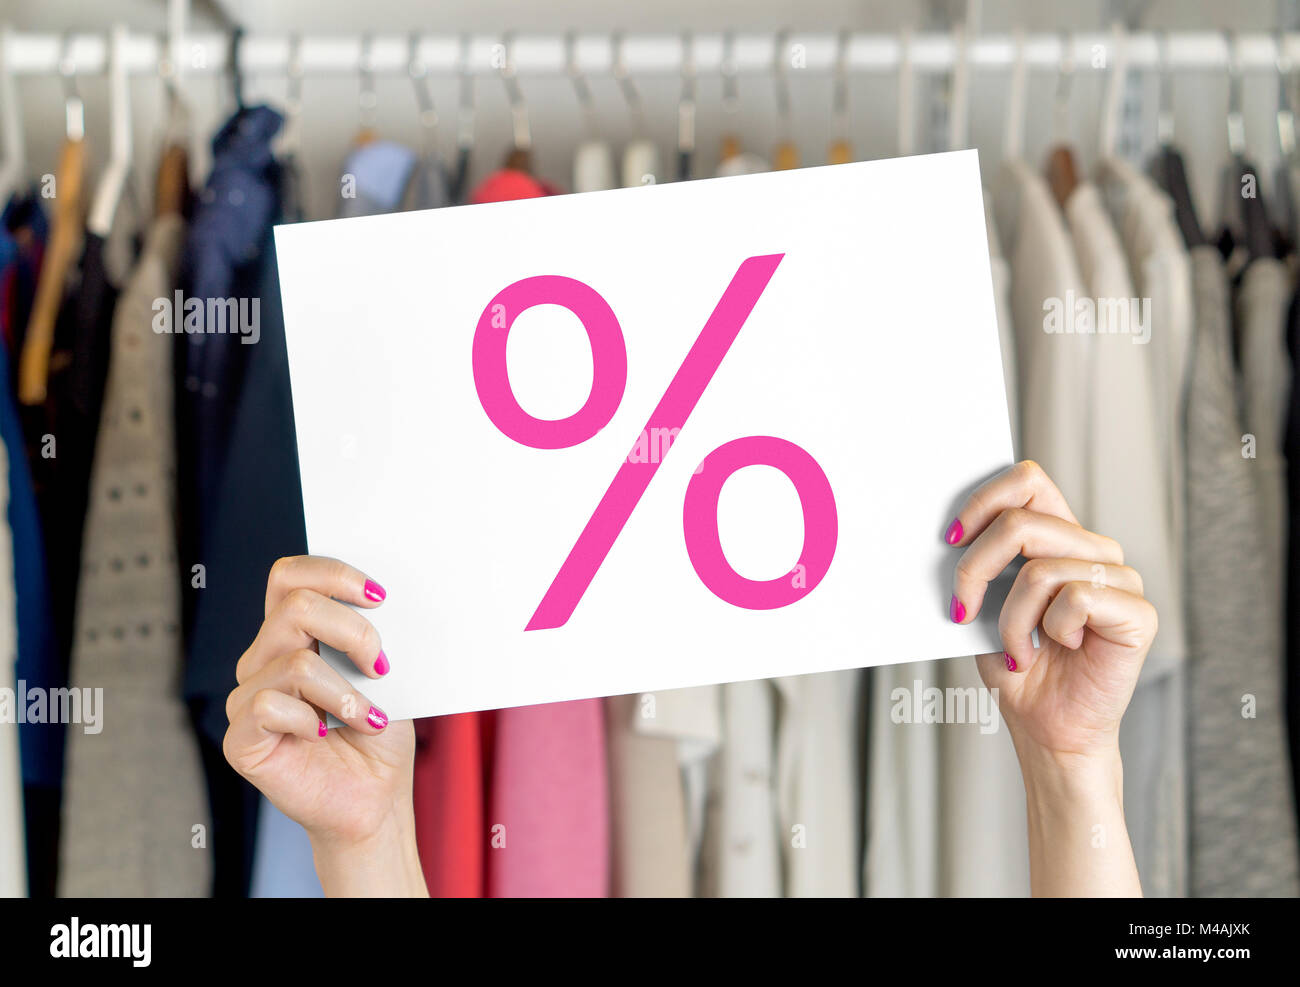 Verkauf, Schnäppchen und reduzierte Preise im Shop Stockfoto